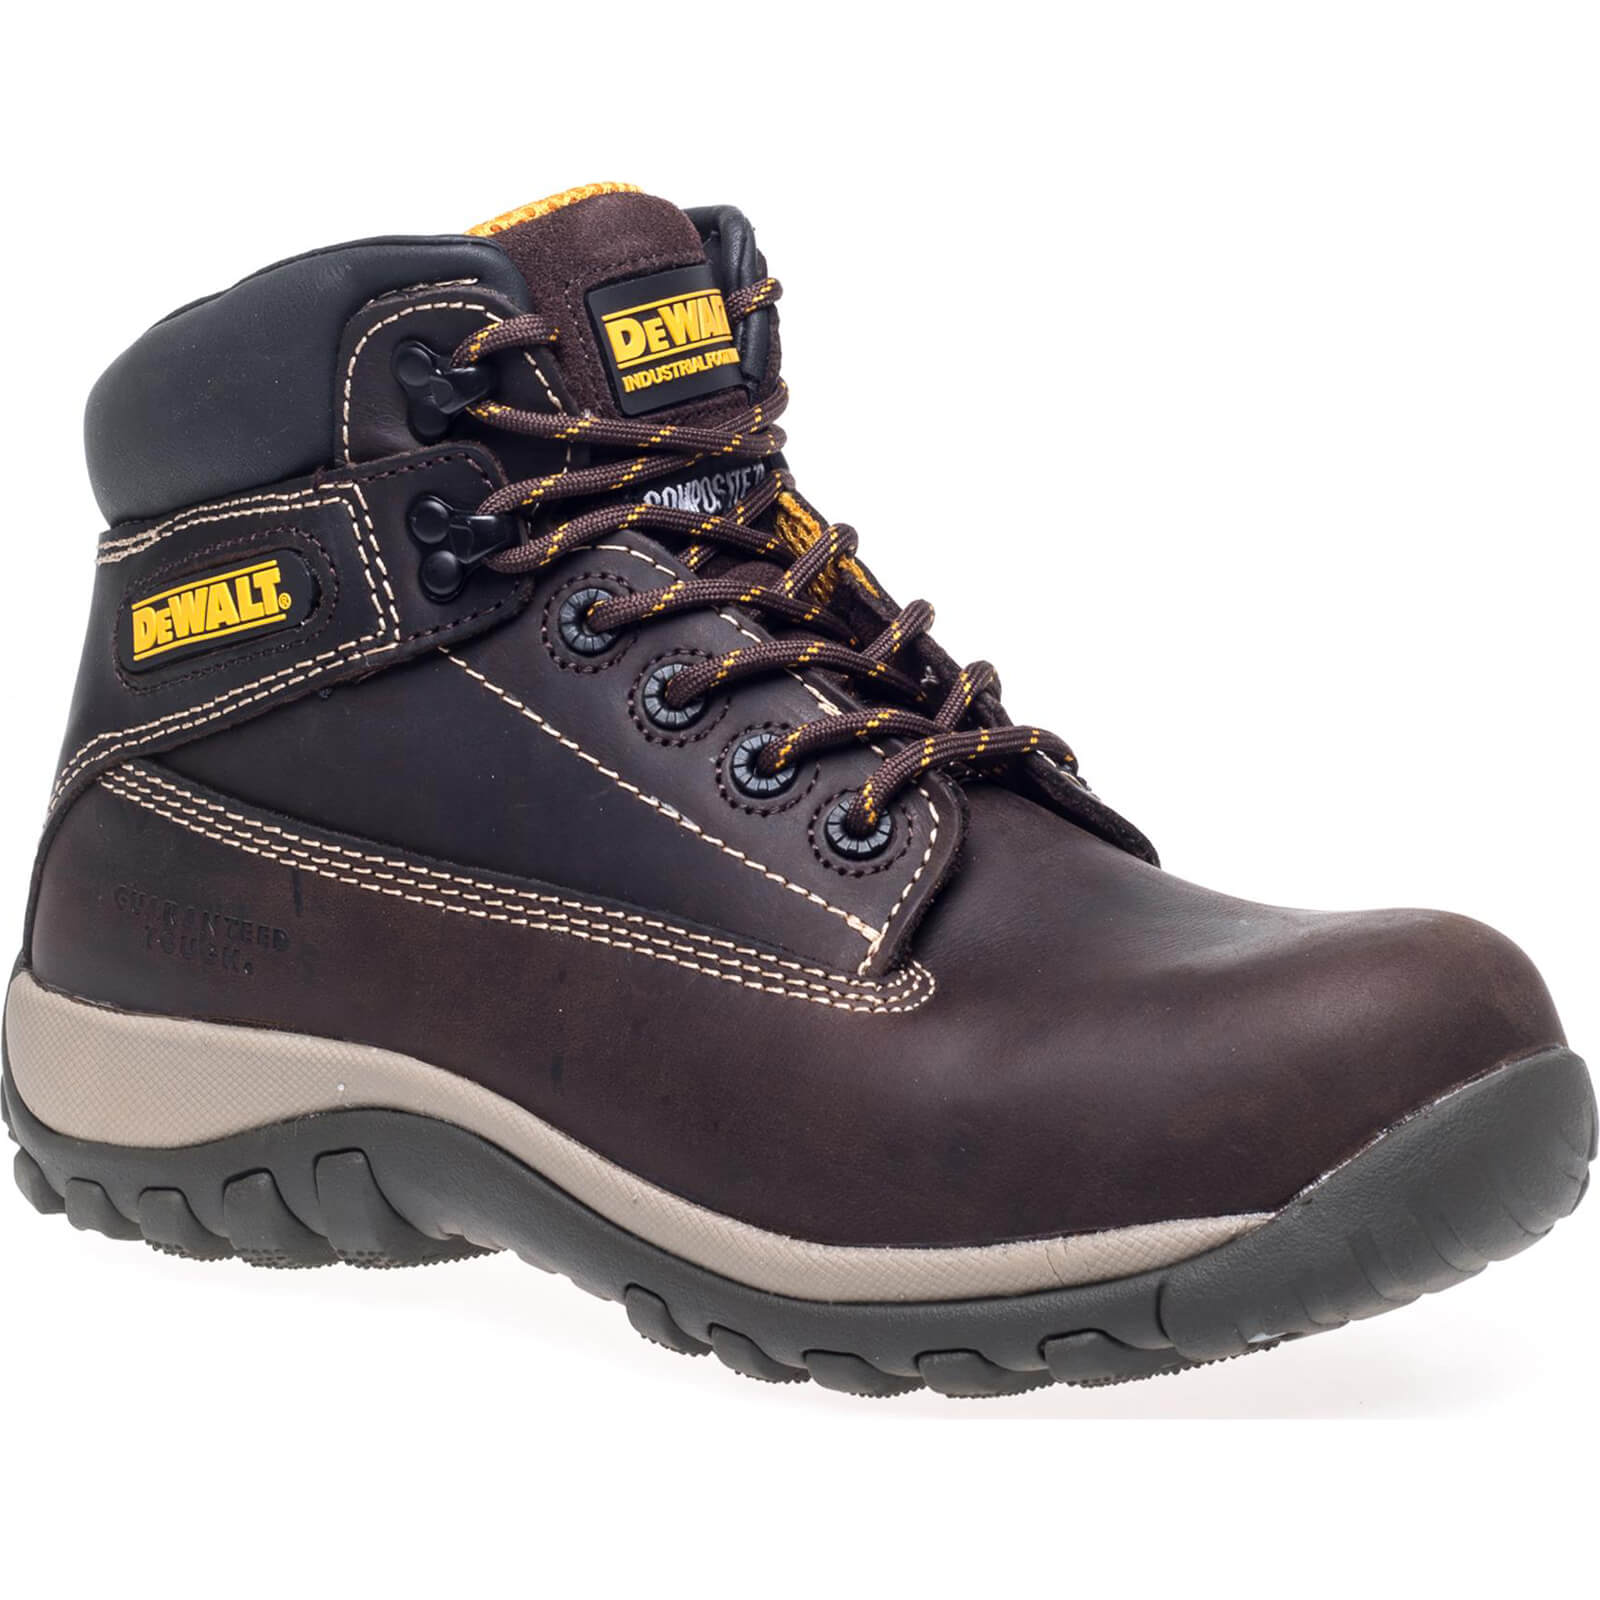 Photo of Dewalt Hammer Non Metallic Safety Boots Brown Size 8